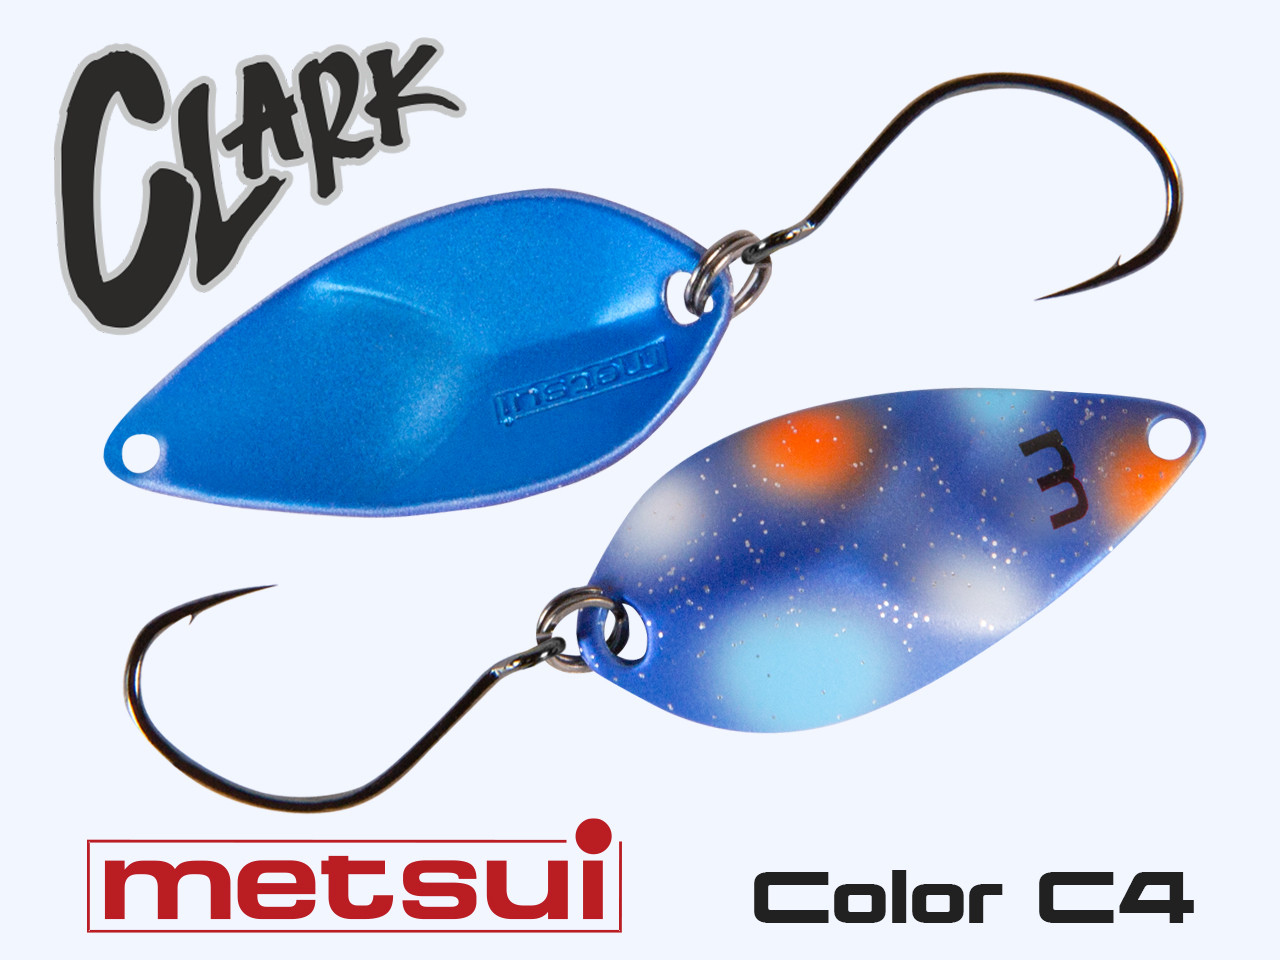 Колеблющаяся блесна METSUI CLARK 3.3 g, цвет C4